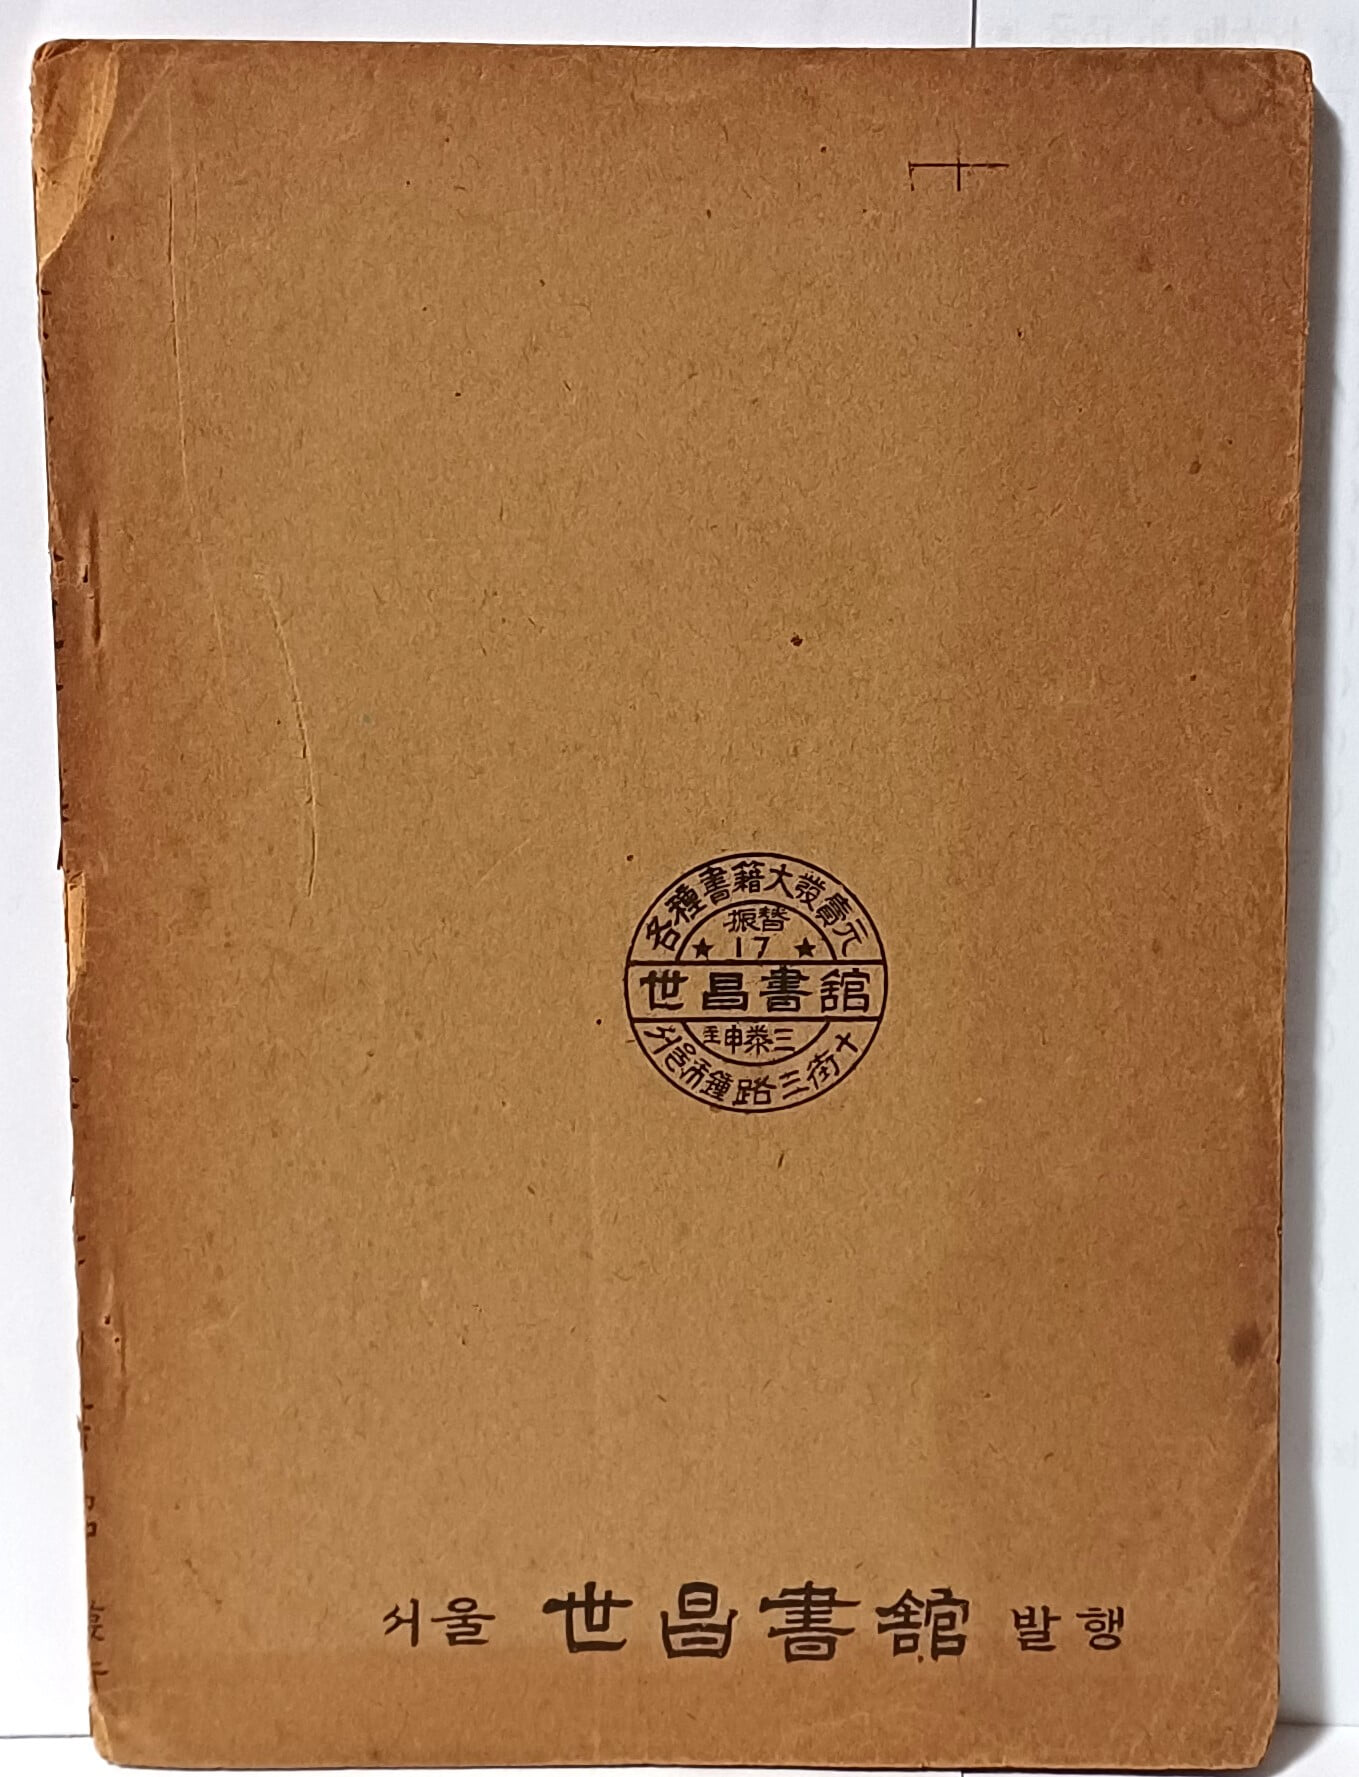 경험비방 소아방약합편(全) -단기4290년(1957년) 초판 -148/210, 45쪽- 희귀본-한의학 서적-